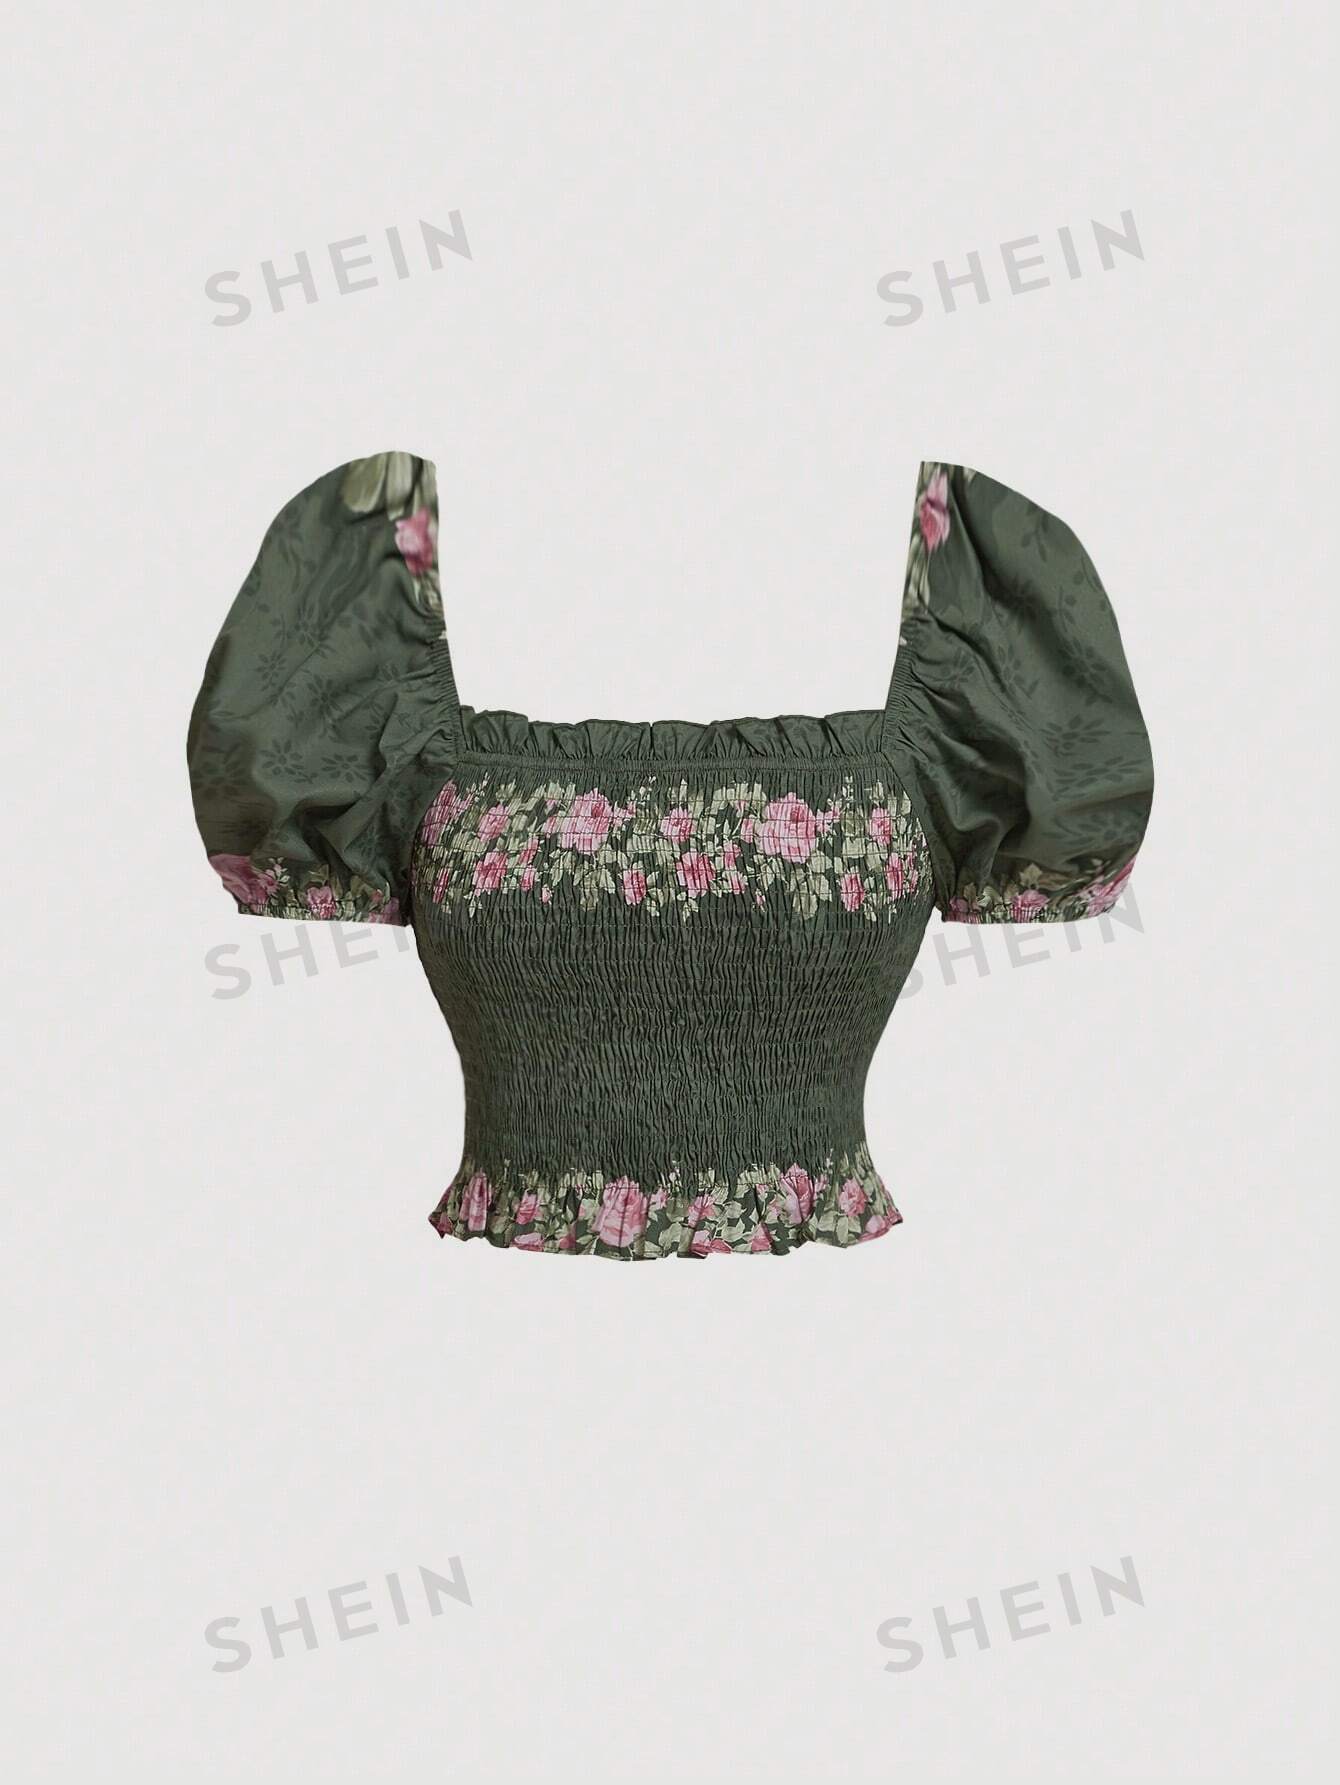 SHEIN MOD Женская винтажная блузка с пышными рукавами и цветочным принтом, многоцветный женская блузка с цветочным принтом ажурная блузка с промежностью 2021